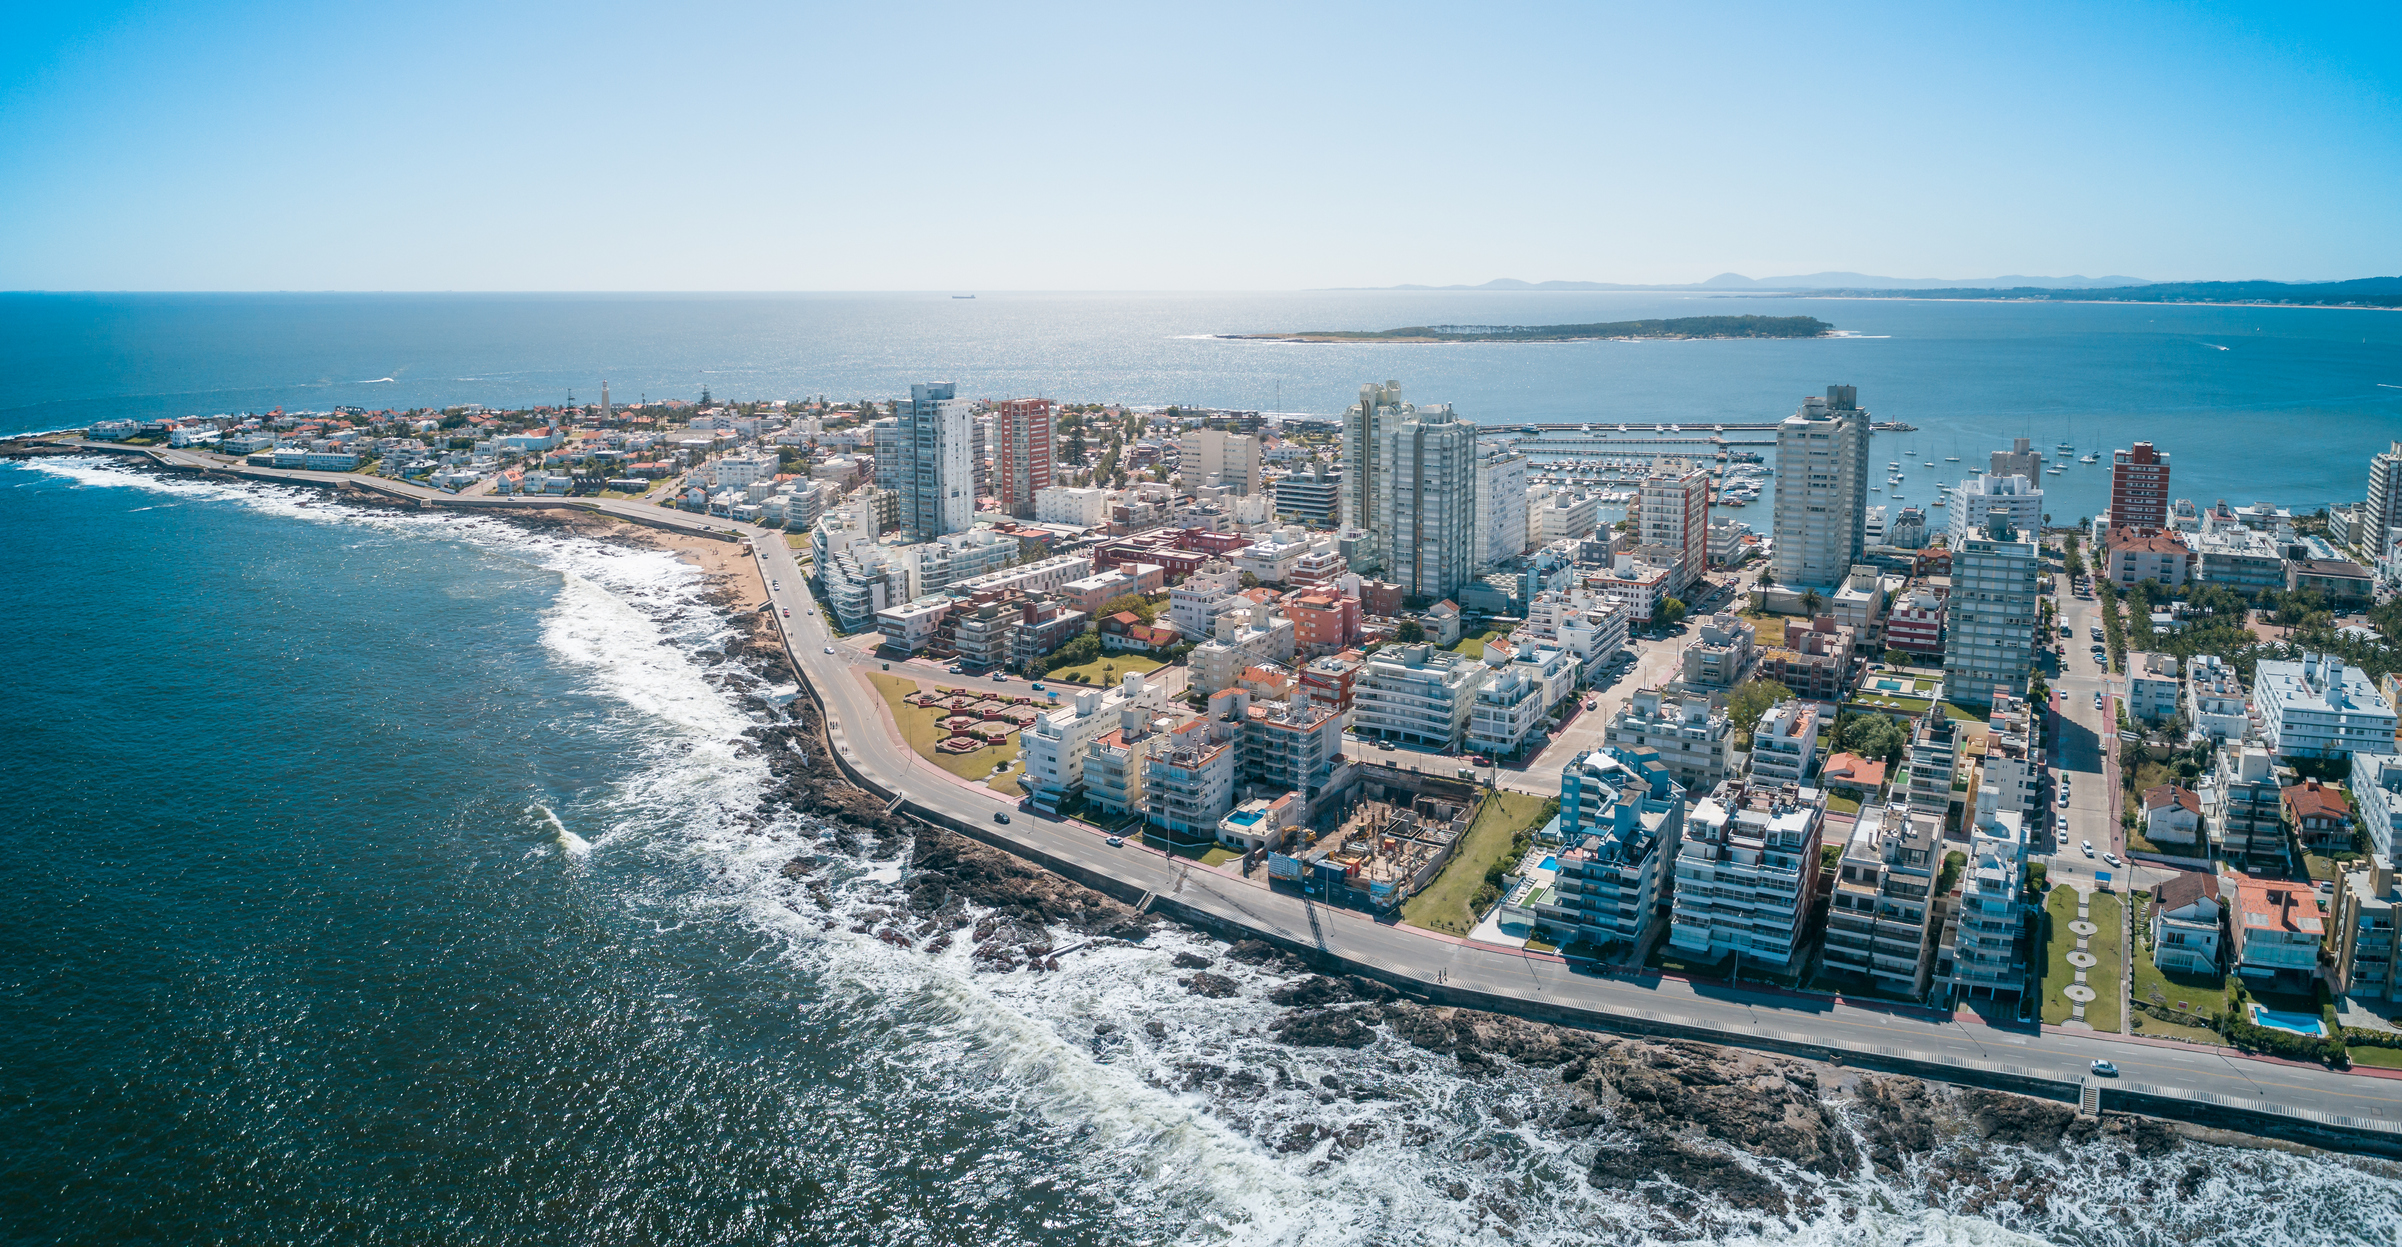 En Punta del Este dicen que está naciendo el “Puerto Madero uruguayo” en un barrio llamado Manantiales porque la mayoría de los propietarios de esta zona de chacras, barrios cerrados y viñedos son argentinos

Foto: Punta del Este